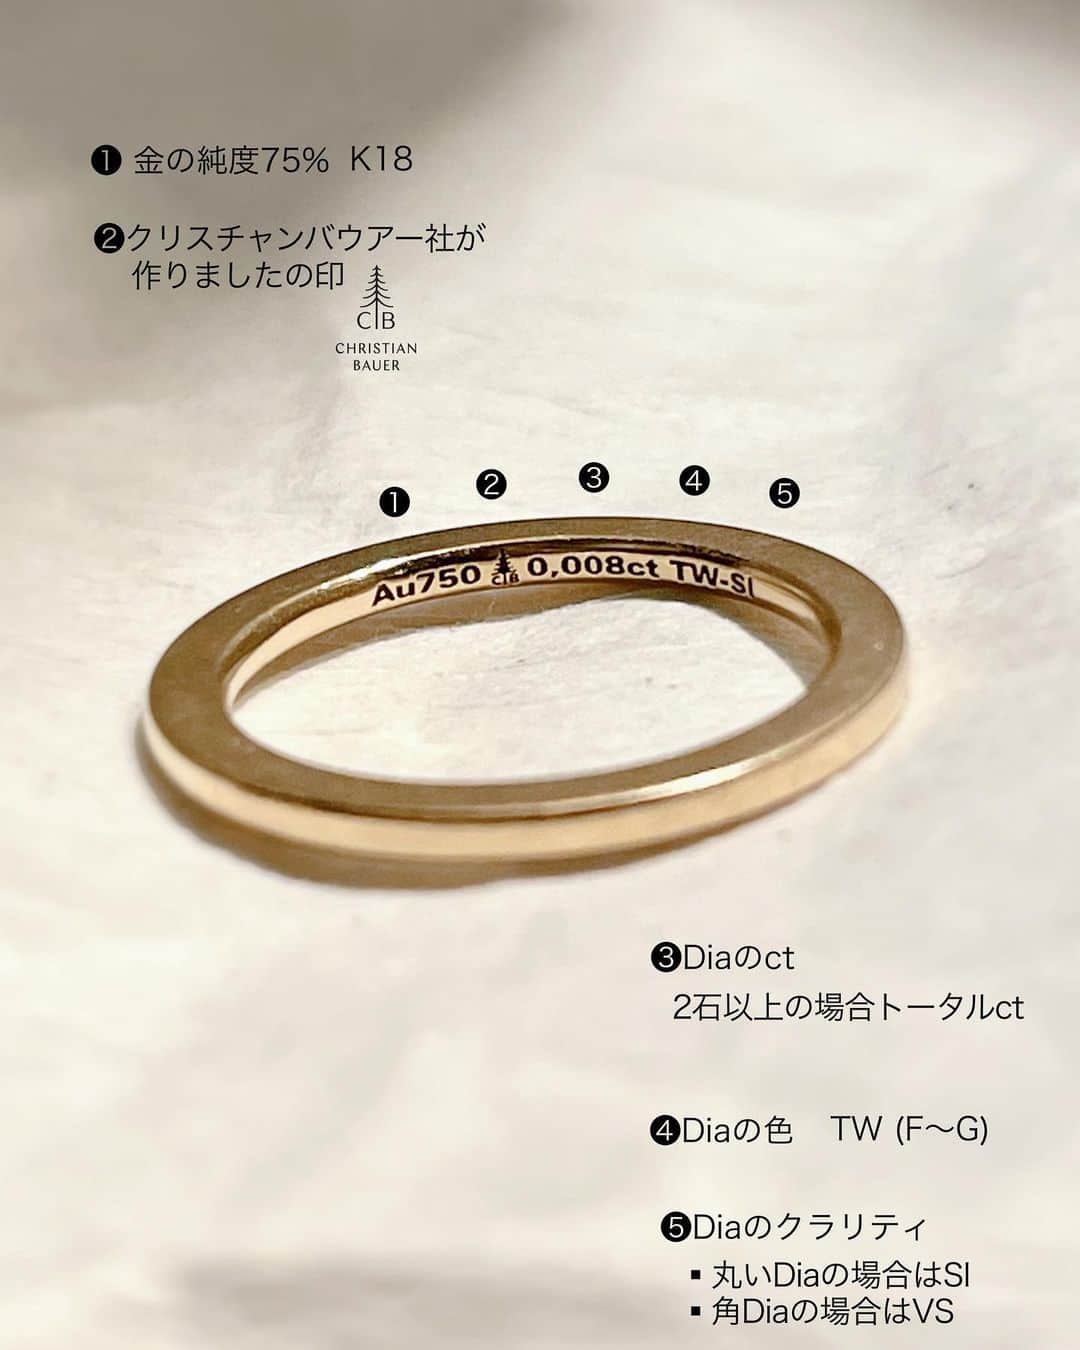 Danke schön ダンケ 金沢 結婚指輪 鍛造さんのインスタグラム写真 - (Danke schön ダンケ 金沢 結婚指輪 鍛造Instagram)「・ ・ ハイ🙌🏻 今日のバウアーさんは ガッツリ解説 ・ ・ もうドイツのリングに 携わって20年以上になると 当たり前…となっている事が ・ ・ 実は日本の市場ではまだまだ 当たり前ではなかったと…🤦🏼 ・ ・ なので今日は 派手さはない地味なお話し ・ ・ 『生涯共に…の指輪』に拘りたい方には こんな事も知りながら比べて頂けたら…の投稿です。 ・ ・ 良く｢婚約指輪」を買う時には イヤっと言うほどDiaの説明を聞きますよね！ ・ ・ 俗に言う『鑑定書』の説明 ・ ・ アレっ…と 思いませんか？ ・ ・ ｢婚約指輪」の時は皆さん 真剣により質の高いDiaを…探し求めているのに ・ ・ 『結婚指輪』に留められている 小さな小さなDiaになると ・ ・ 途端に… そこに着眼しなくなる😳 数の話しばっかりに夢中⁈ ・ ・ ※結婚指輪に留められている小さなDiaはメレーダイヤと 言う呼び名があり（0.1ct以下のDiaの事） ・ ・ 実はDiaは大きくても小さくても 『鑑定』するのに専門の鑑定機関を通すので お金がかかるのてです。 ・ ・ 結婚指輪に留められている小さなDiaは 鑑定していない Diaが留められている事が多いです。 ・ ・ 仮に鑑定したDiaならば 鑑定書があるハズです😳又は 婚約指輪の時と同様にDiaの説明があると思います。 ・ ・ ハイ🙌🏻クリスチャンバウアーは Dia屋さんではないですが ・ ・ 実はバウアーの指輪にDiaが留められている場合には　 指輪の内側に全て ・ ・ 指輪の素材の刻印の他にDiaの鑑定した内容が 全て打ち込んでのお届けです。 📷スライドして見てください。 ・ ・ 『鑑定書とは？』日本の場合 本みたいなモノが手渡されると思いますが…。 ・ ・ バウアーの場合は 指輪の内側を見れば一目で分かると言う訳 ・ ・ 仮にもらった鑑定書 この先！何回見ますか?って感じ ・ ・ さすが 合理的なドイツ ・ ・ 仕舞いには どこに行ったかわからない😰etc. ・ ・ ある意味ecoのお国柄 ドイツと言う感じもしますが ・ ・ こんな単純明快な方法 なんで思いつかない？かな？…と ・ ・ このお話しをするのに 例えで撮影したモデルは ｢スライスRing」の側面に留められている 1Diaあたり0.04ctの指輪です。 ・ ・ こんな小さいなDiaですら 鑑定されたDiaをバウアーは留めています。 ・ ・ そぅ！只Diaが留められている訳ではなく ちゃんと表記出来るレベルのDiaと言う訳です。 刻印もめちゃくちゃキレイでしょ！ しかも幅1.3mmにこの刻印ですよ！ ・ ・ 世の中たくさんの ｢鍛造製法」と言われている指輪や ｢ダイヤモンドリング」と言われている指輪がありますが ・ ・ やはり！何かしらの 違いが必ずあるのです。 ・ ・ その違いは ストレートに言えば ・ ・ お値段の差に出ています。 ・ ・ 見た目が仮に似ていても ・ ・ こんな肉眼で分かるようで 分からないような所にも ・ ・ 拘りと言う言葉以上に 『生涯共に…の指輪』を真剣に考えれば考えるほど 譲れなくなる『質』を求めた結果が クリスチャンバウアーの指輪だと私は捉えています。 ・ ・ 是非！表面的な所ばかりでなく こんな所にも着眼しながら 指輪を見て頂ければと思います。 ・ ・ 小さくても されどDiaのお話しでした。 ・ ・ ・ ※フルエタニティリングの場合モデルよっては 今回の0.04ctよりもっと小さいDiaの時でも 指輪の内側に刻印されてますよ。御安心くださいね。 ・ ・ 例外 ・ブラックダイヤの場合はctのみ ・　 📷1〜5の指輪は幅1.3mmに刻印 📷2:指輪の内側にある刻印解説 📷3:指輪の側面に2Dia 📷4:このモデルの場合の内側刻印解説 📷:実際に身につけたらこんなに小さいの ・ ・  【工業系 鍛造削り出し】 🇩🇪クリスチャンバウアー 専門店 ・ ・ ワンランク上をいくノウハウの クリスチャンバウアーの選び方なら 『Danke schön 』 ・ ・ ・ —— 𝐃𝐚𝐧𝐤𝐞——— ▪︎ Instagramプロフィール 🔜 @danke2005  —————————————————————𝐒𝐜𝐡⍥𝐧——— ・ ・ #クリスチャンバウアー金沢 #鍛造指輪 #鍛造リング #結婚指輪 #結婚指輪オーダー #切削加工 #結婚指輪探し #結婚指輪選び #指輪探し #指輪選び #マリッジリング #結婚指輪金沢 #金沢結婚指輪 #セカンドリング #結婚指輪買い替え #地金屋鍛造 #ブライダルリング #結婚記念日 #ベビーリング #ドイツリング #自分へのご褒美 #クリスチャンバウアーダンケ #クリスチャンバウアーdanke   ------------------------------------------✈︎ ---------  鍛造削り出し 🇩🇪クリスチャンバウアー 専門店 『𝐃𝐚𝐧𝐤𝐞 𝐬𝐜𝐡⍥𝐧』 ・ • 営業時間 am11:00〜pm9:00 • 定休日 : 木曜日 • 駐車場 : 店舗前OK • ご予約 : 優先」9月23日 14時40分 - danke2005